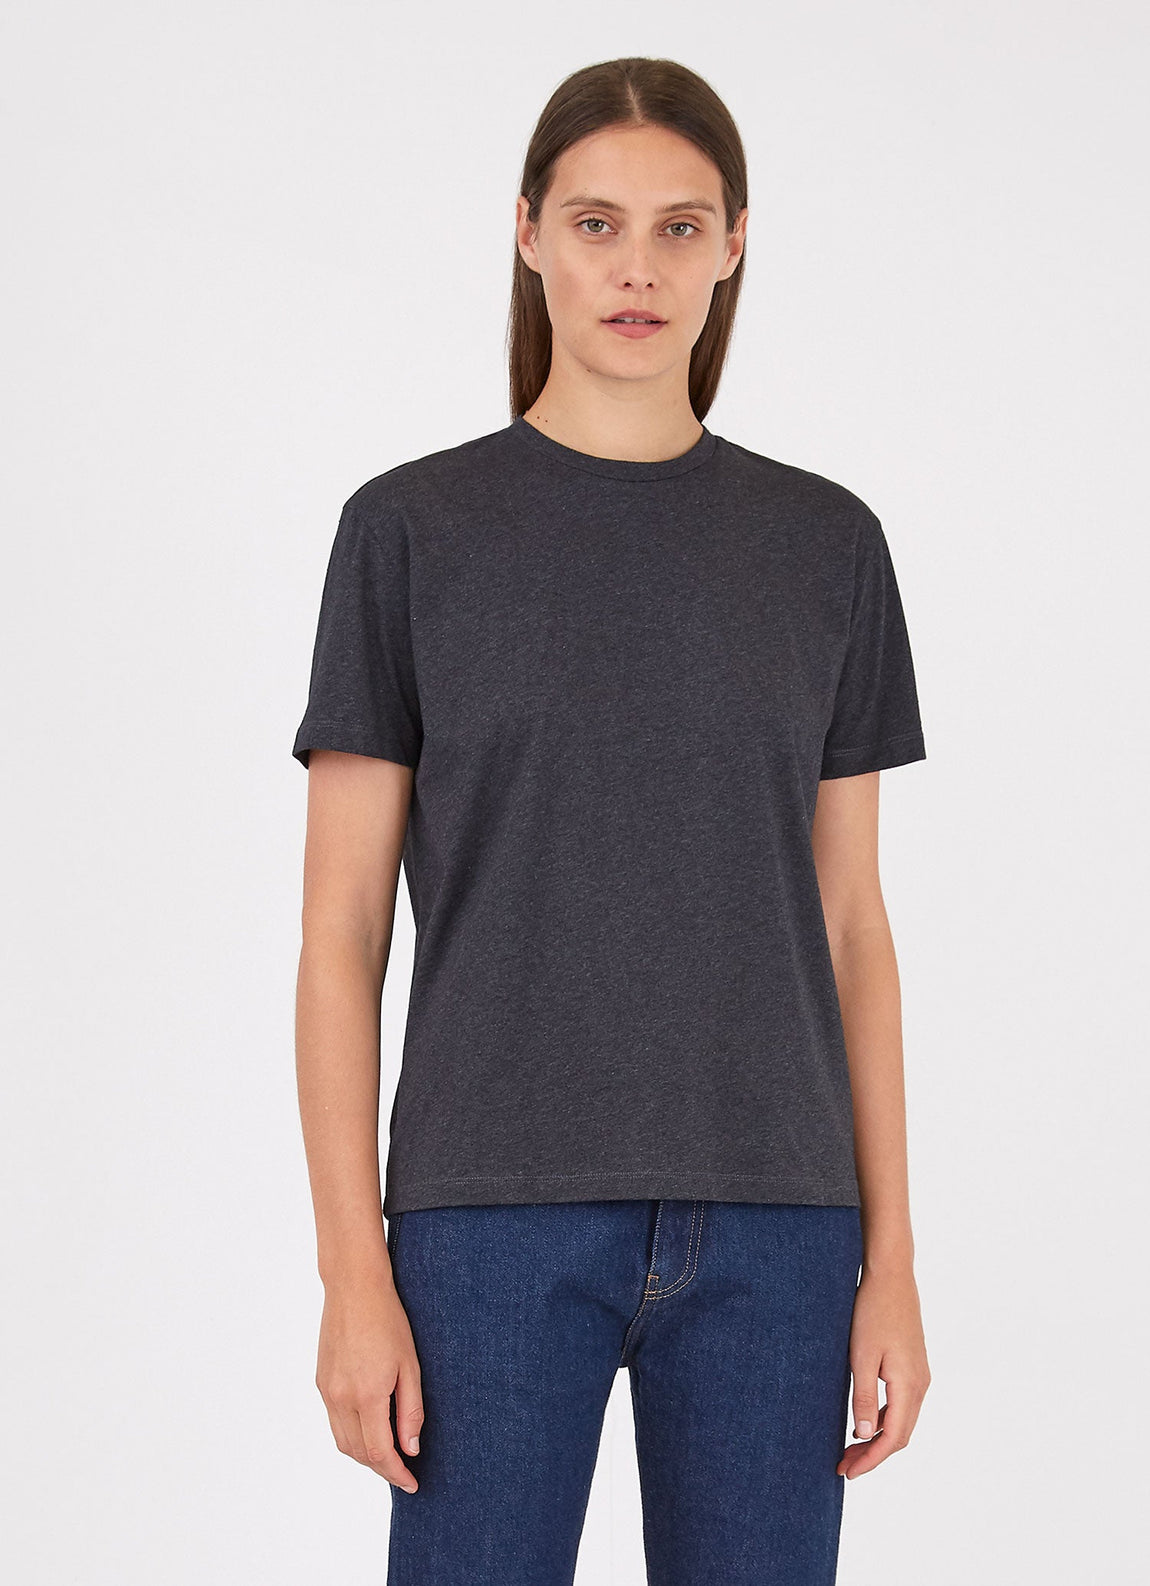 Women's Boy Fit T-shirt in Charcoal Melange